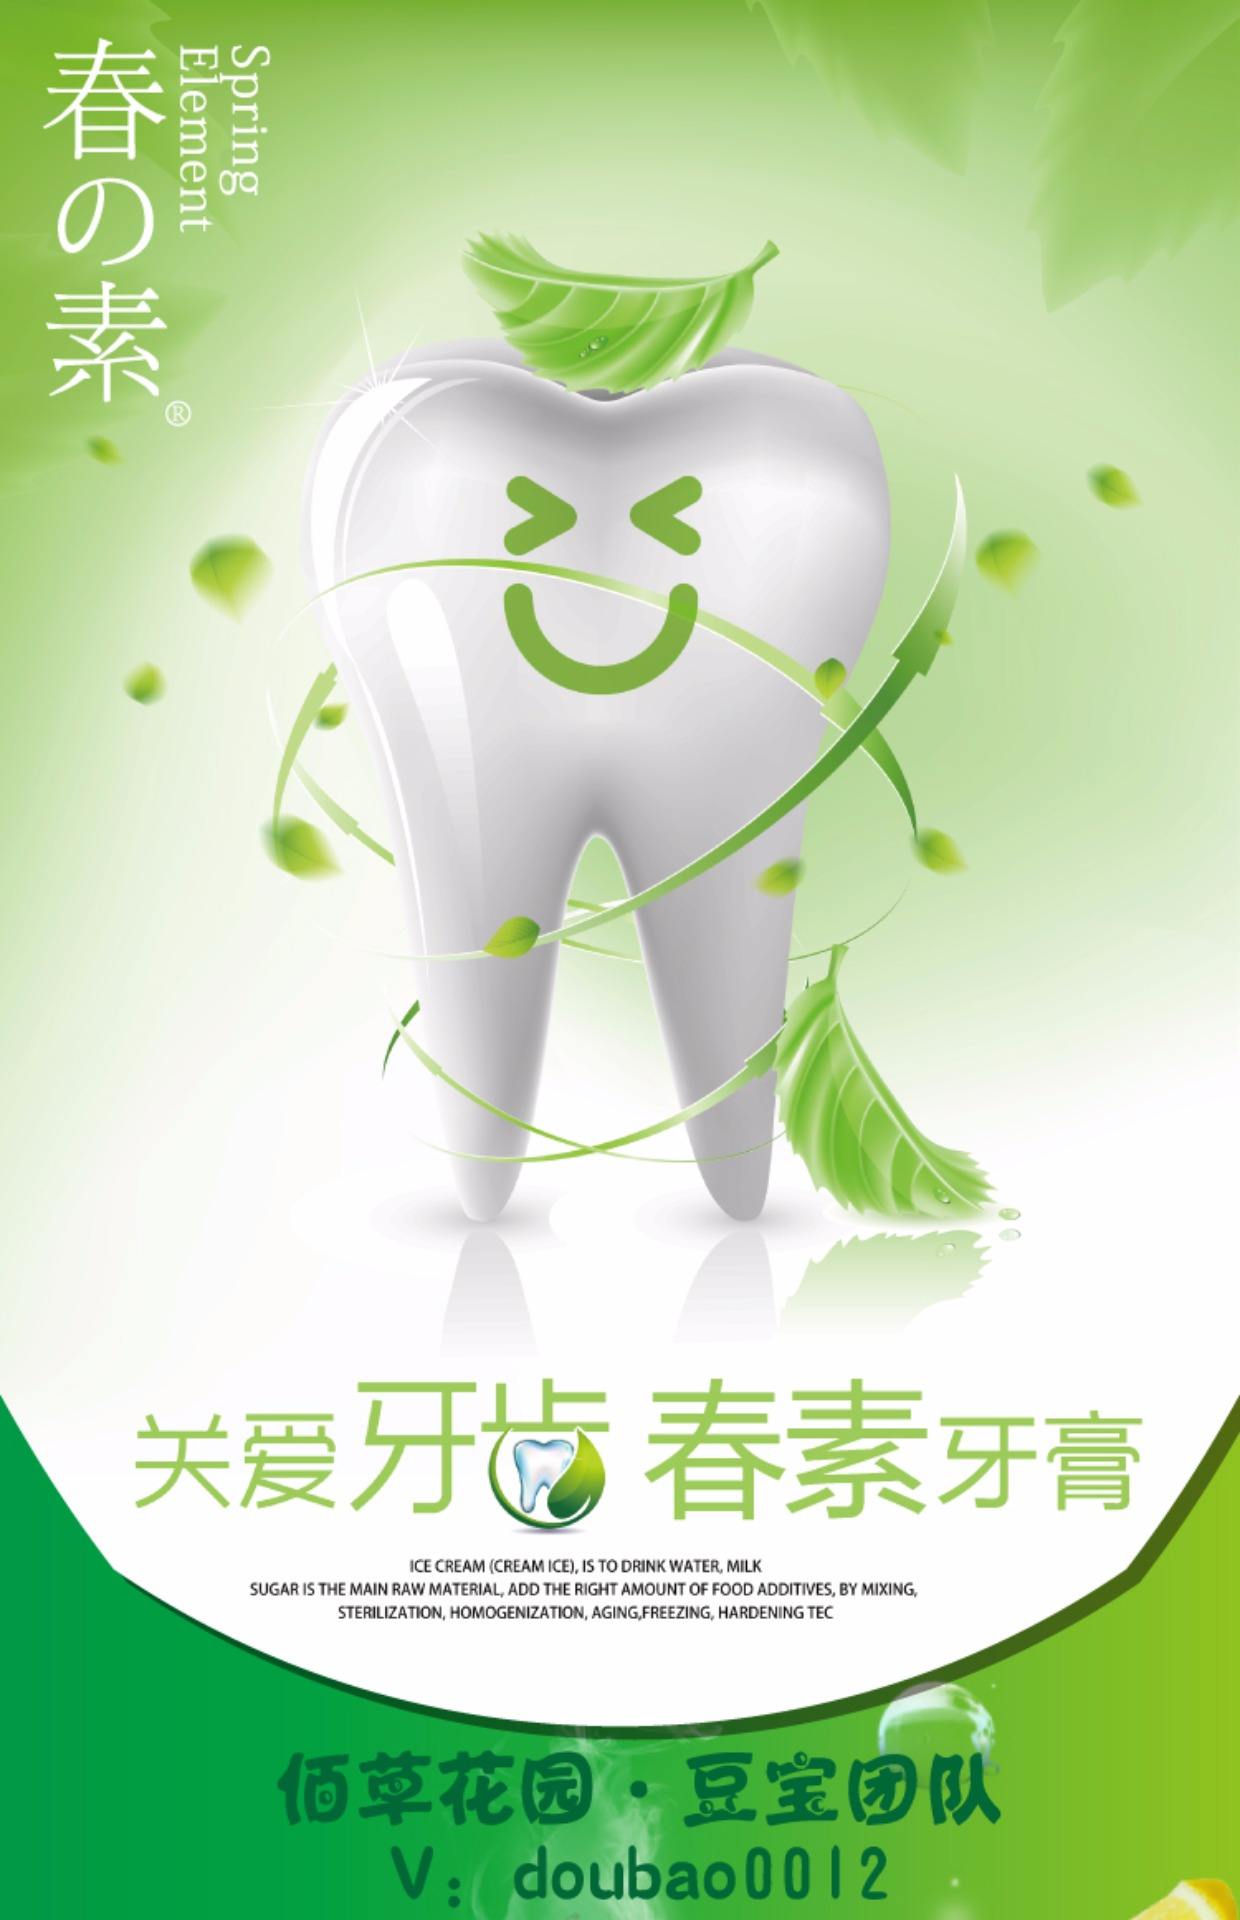 牙膏产品软文(牙膏的软文广告)